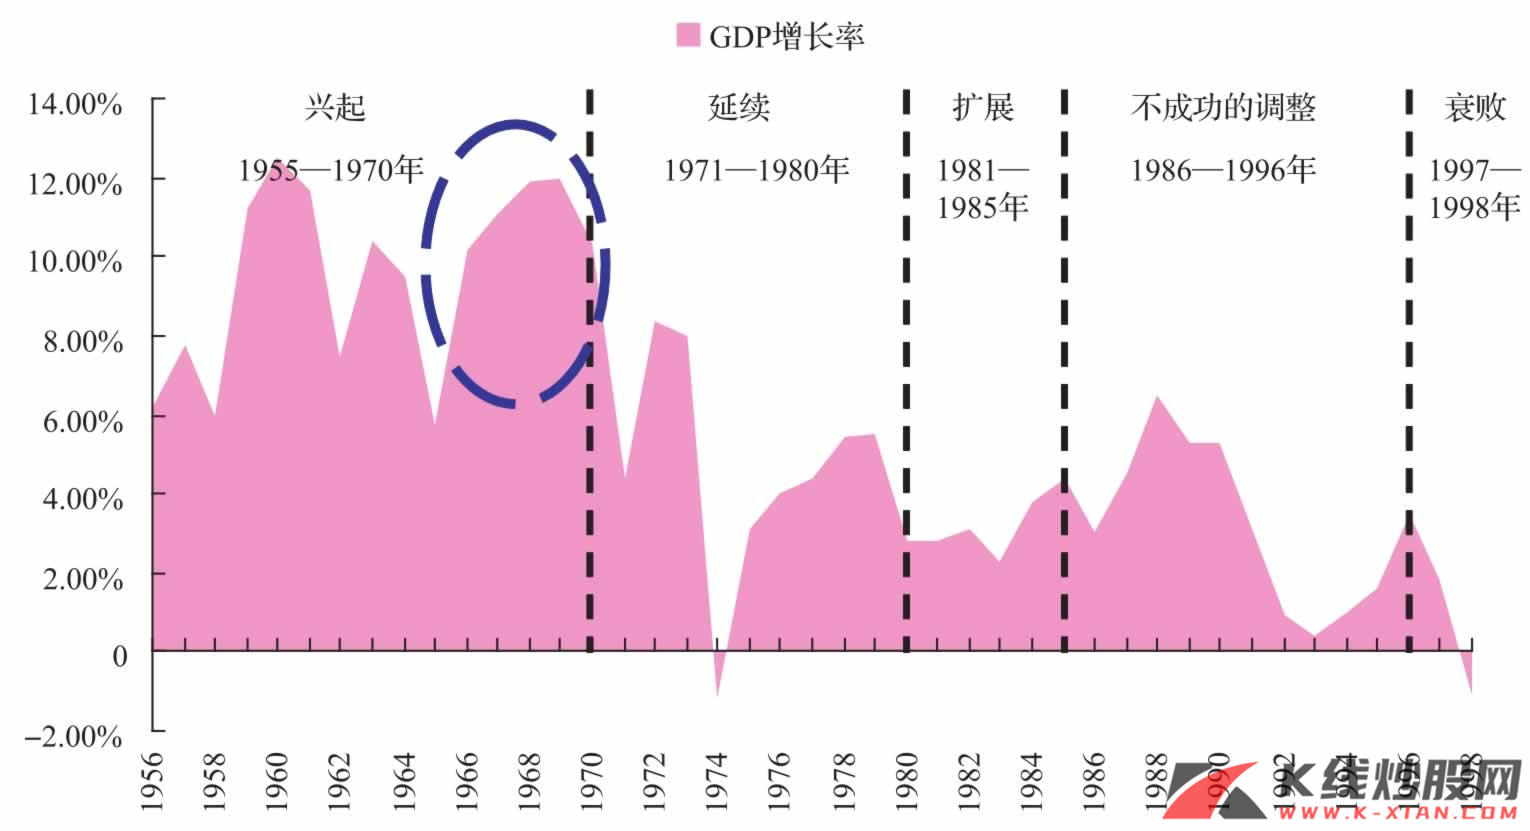 日本GDP增长率波动曲线（1956—1998年）